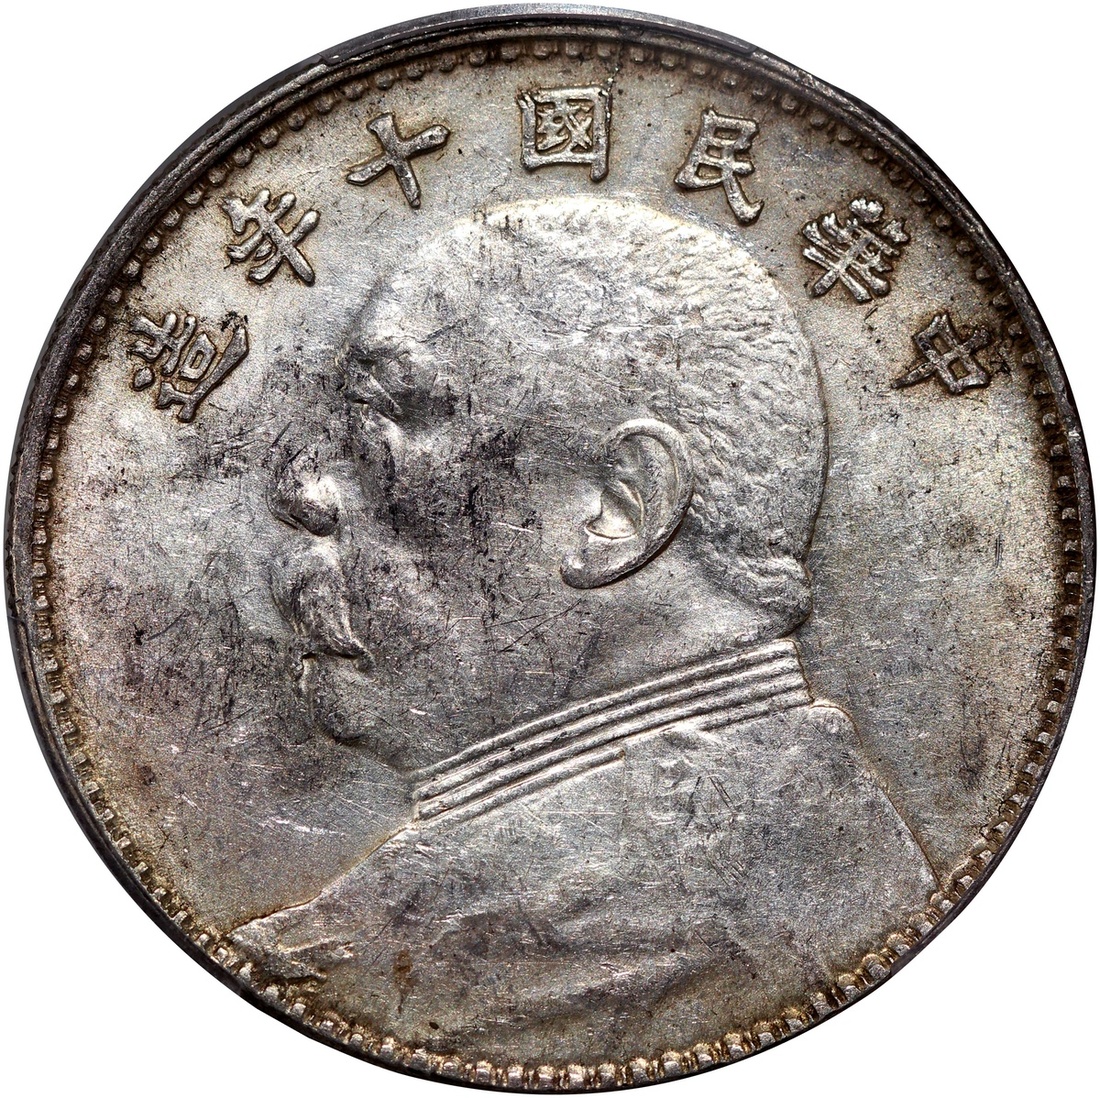 3349 - China, Republic, silver $1, Year 10(1921), Yuan Shih Kai 